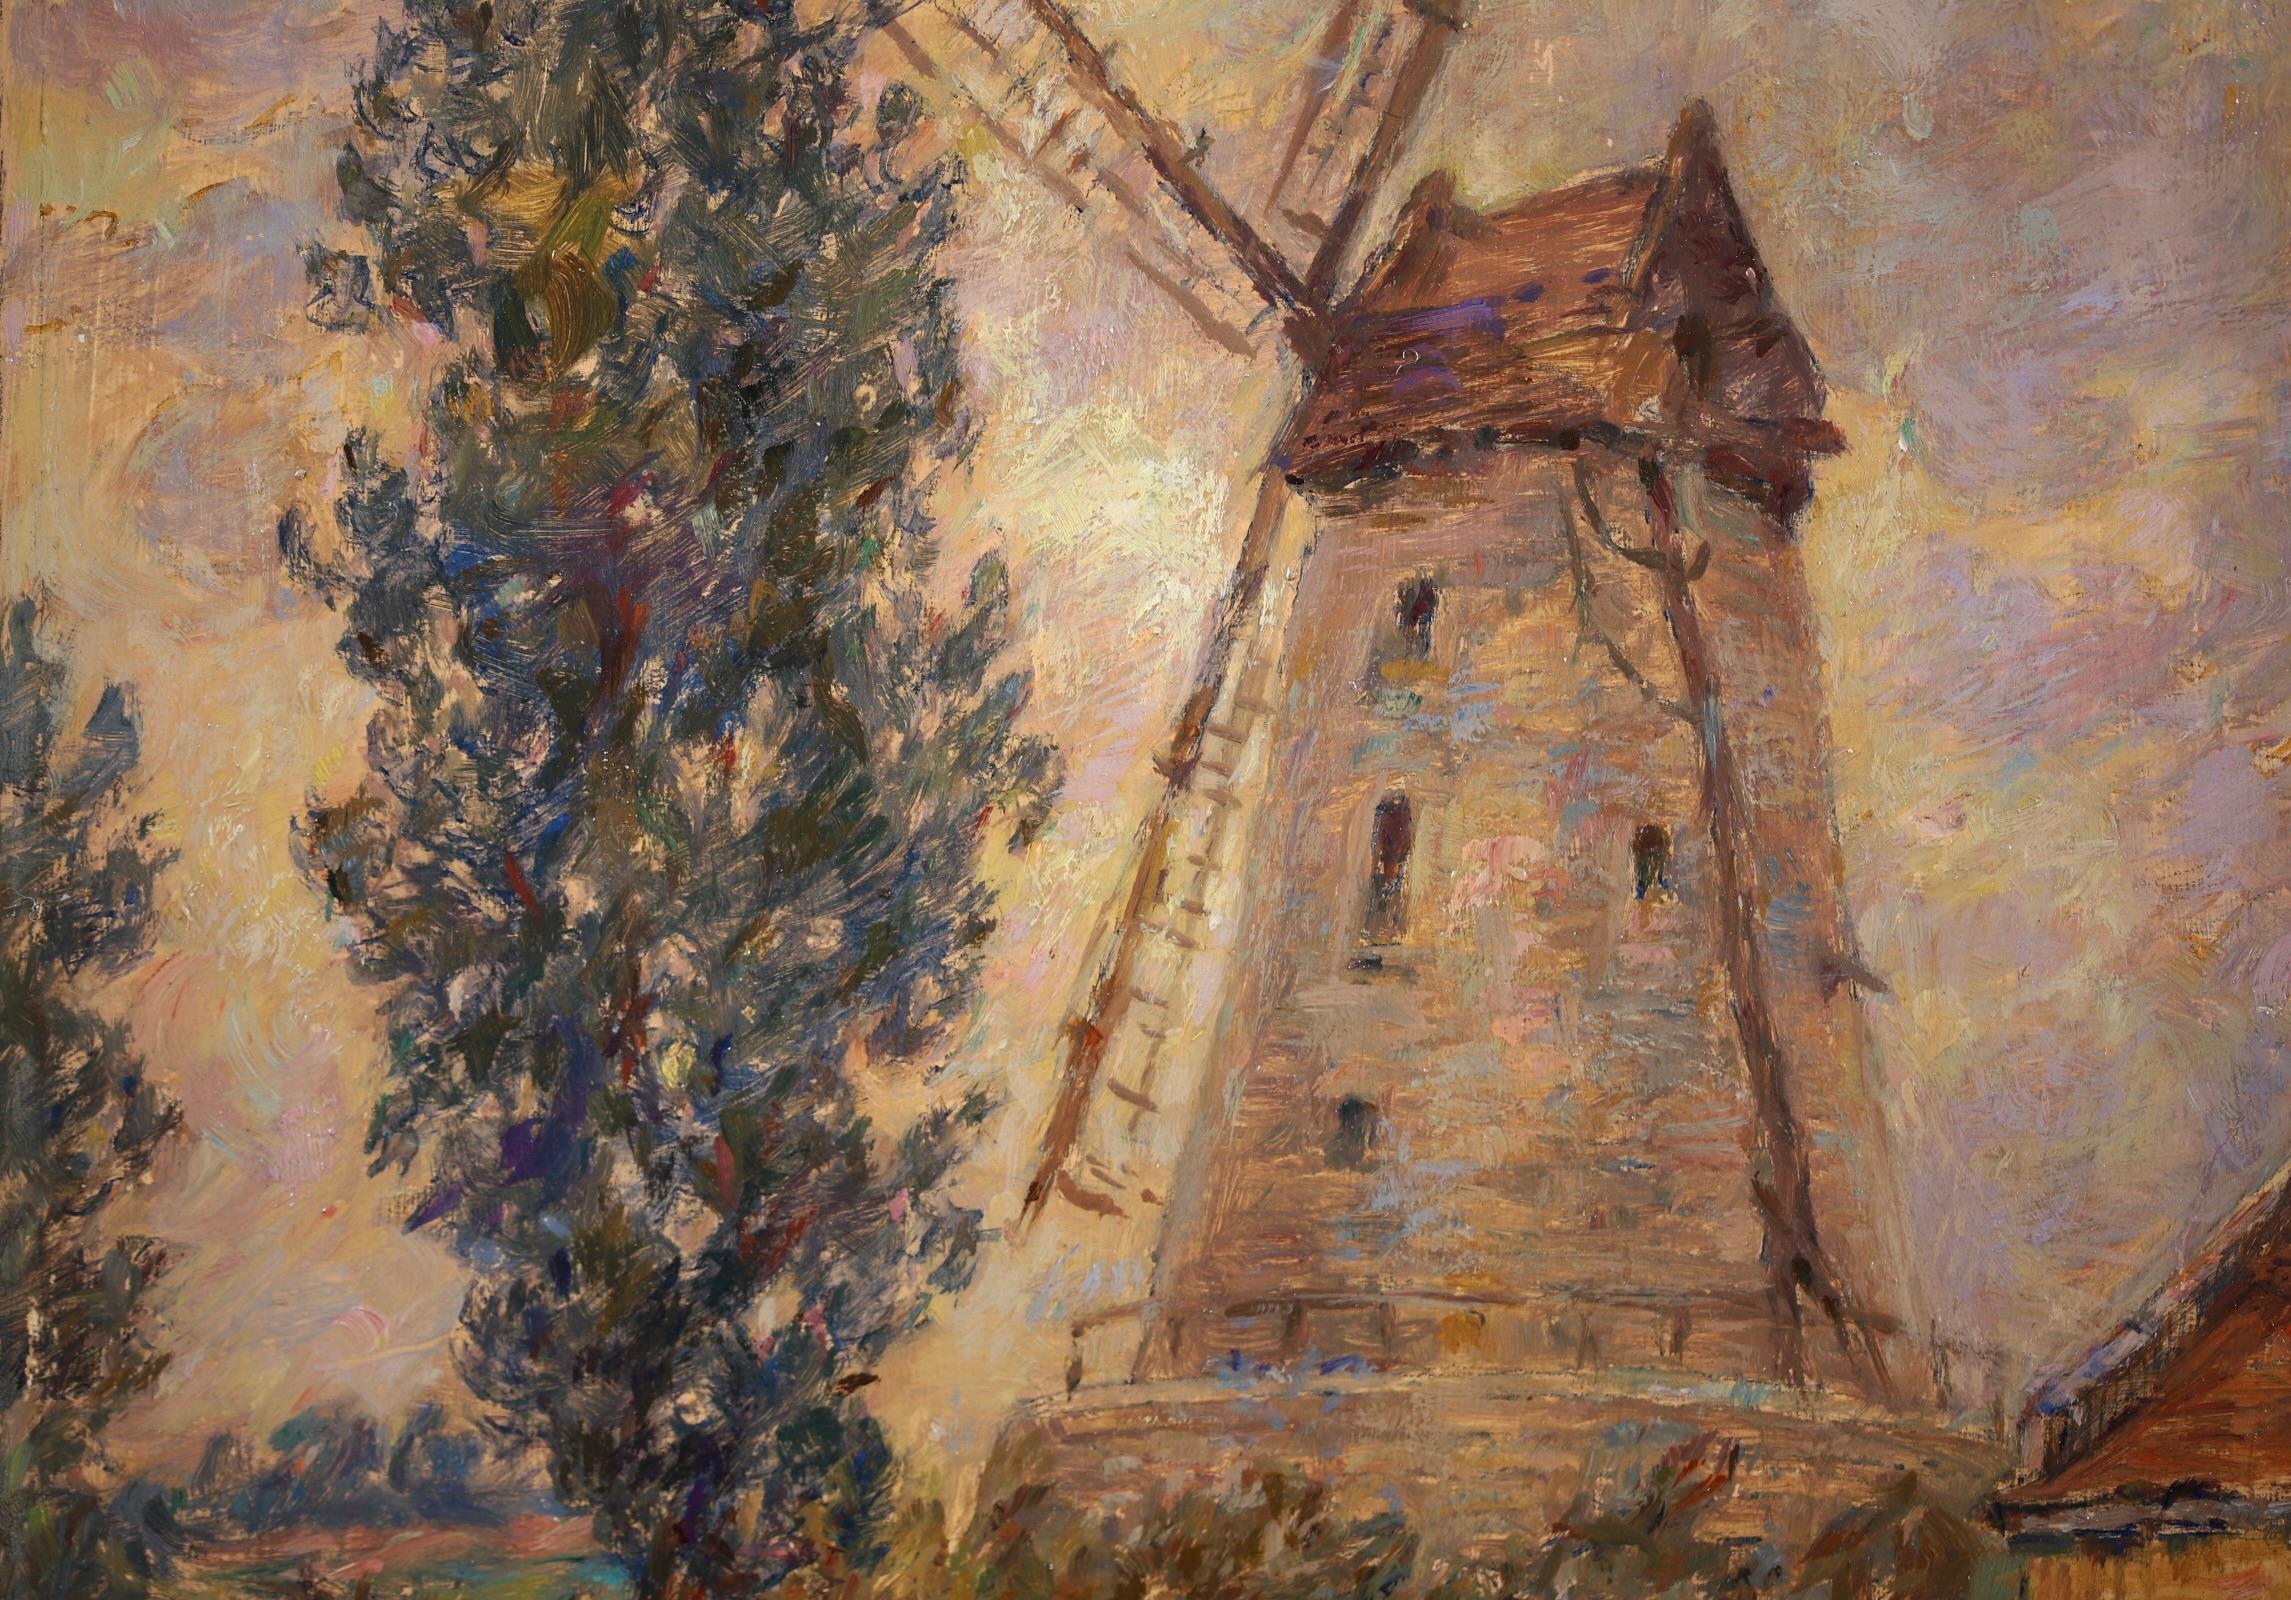 Moulin - Impressionist Oil, Windmill, Figures & Dog in Landscape by Henri Duhem 7